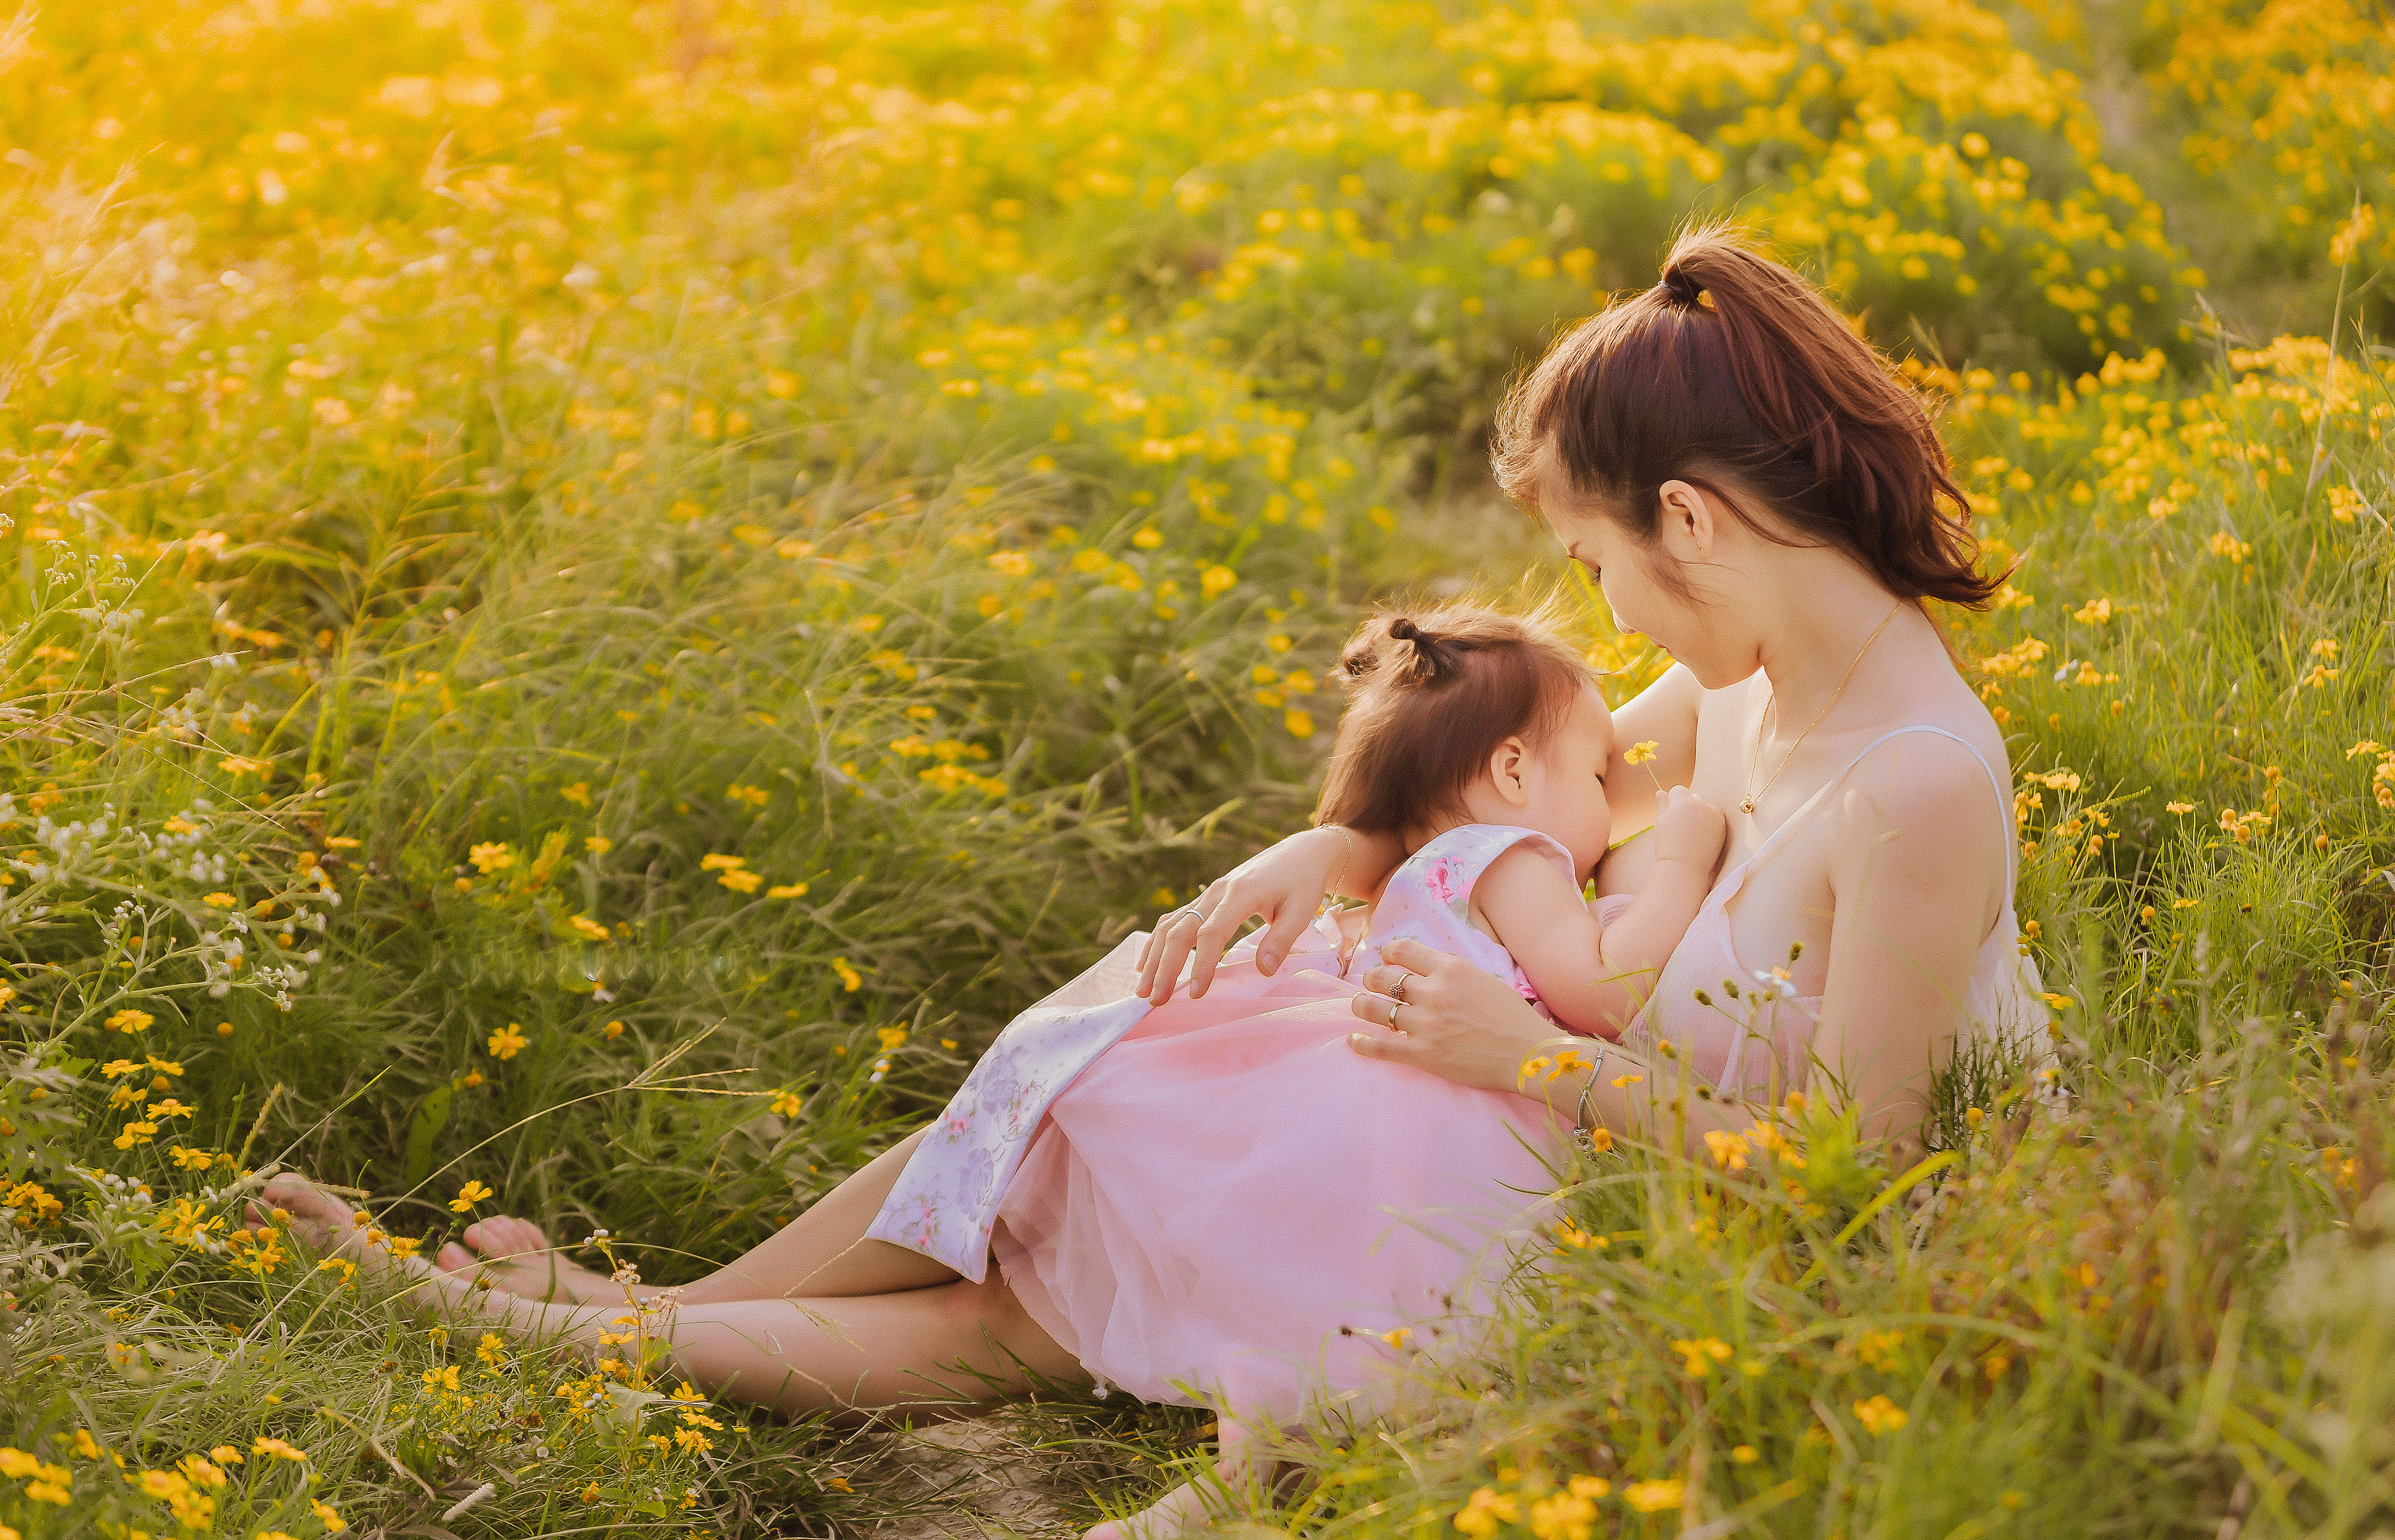 Mẹ 9x (or breastfeeding): Bức tranh chân thật và cảm động về tình mẹ con sẽ khiến cho chúng ta nhớ lại cảm giác ôm ấp, bồng bế của mẹ khi còn bé. Hình ảnh mẹ đang cho con bú là sự ấm áp và thân thương không thể nào tả được. Hãy cùng nhìn ngắm và cảm nhận tình yêu của mẹ dành cho đứa trẻ của mình.